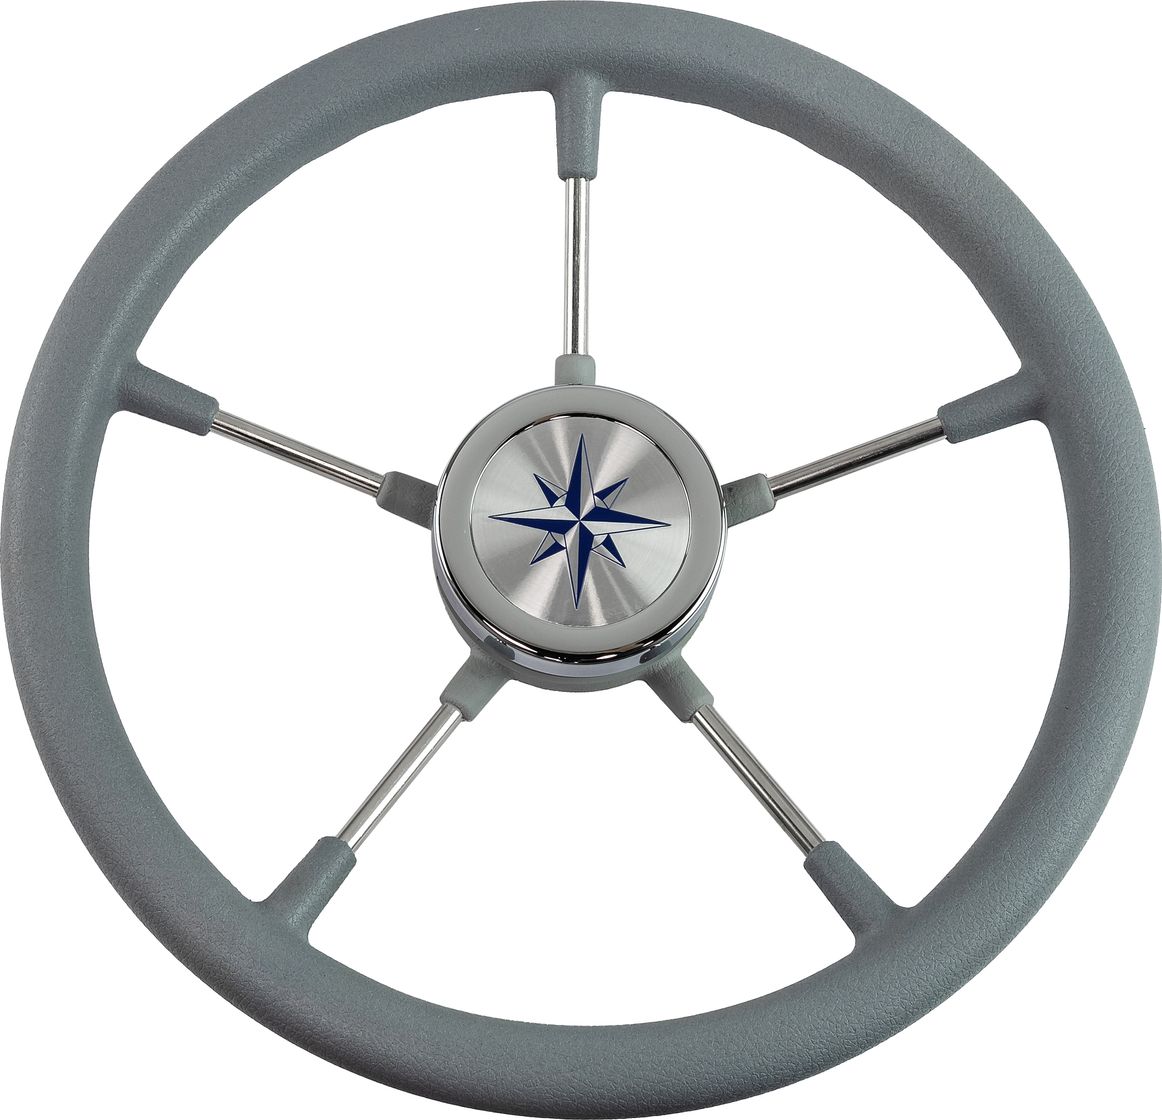 Рулевое колесо RIVA RSL обод серый, спицы серебряные д. 360 мм VN735022-03 рулевое колесо evo marine 2 обод серый спицы серебряные д 355 мм vn850003 35